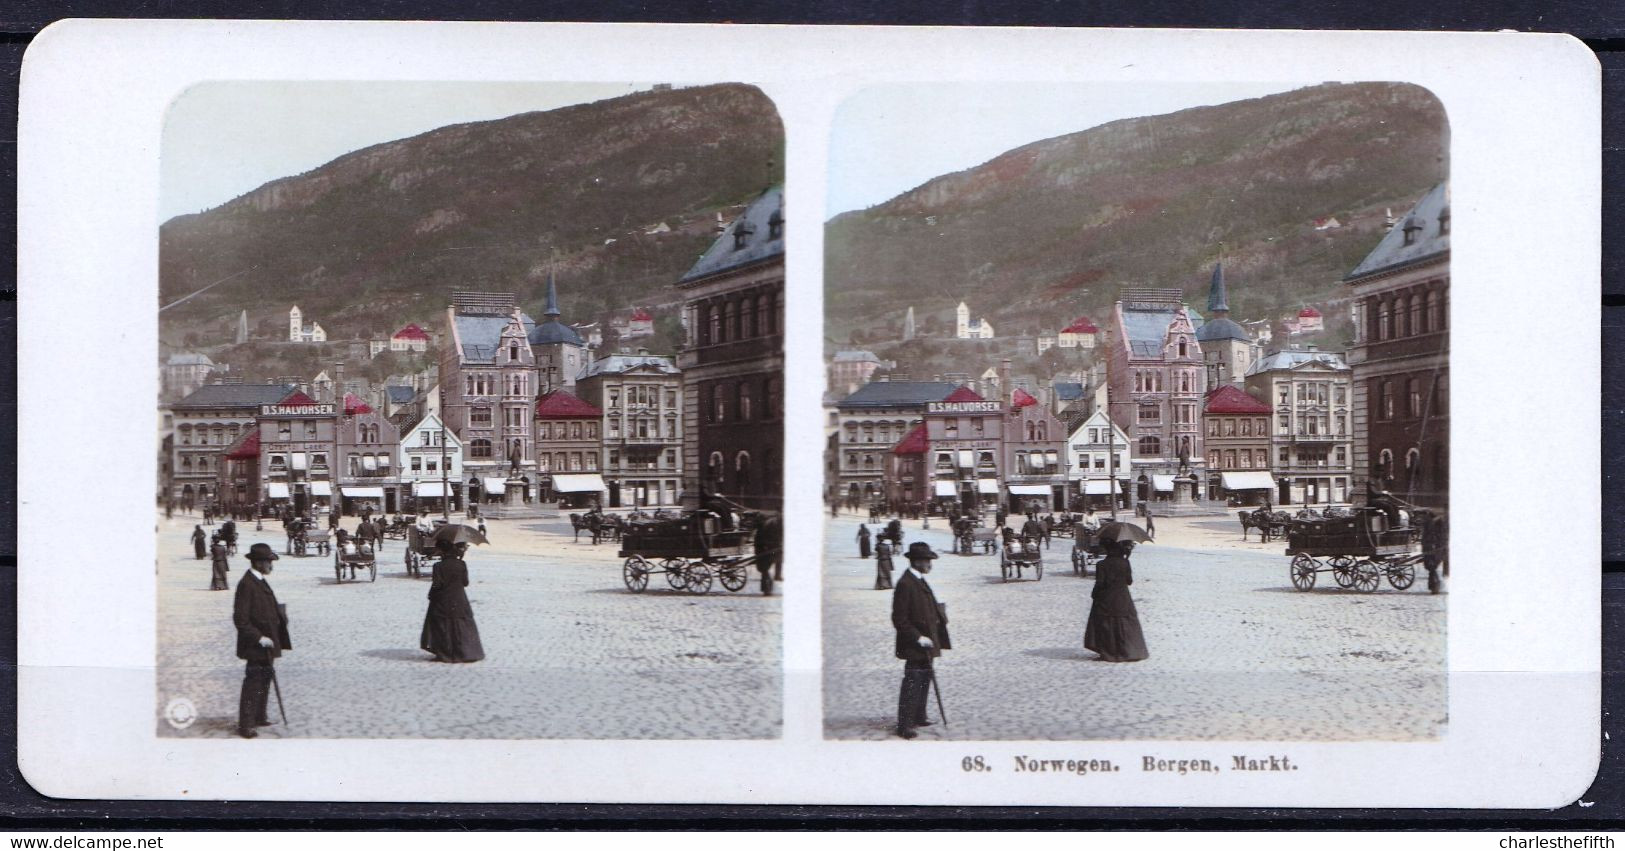 ORIGINAL STEREO PHOTO NORWAY - BERGEN MARKET - FIN 1800 - NICE ANIMATION - RARE !! IN COLOUR - Antiche (ante 1900)